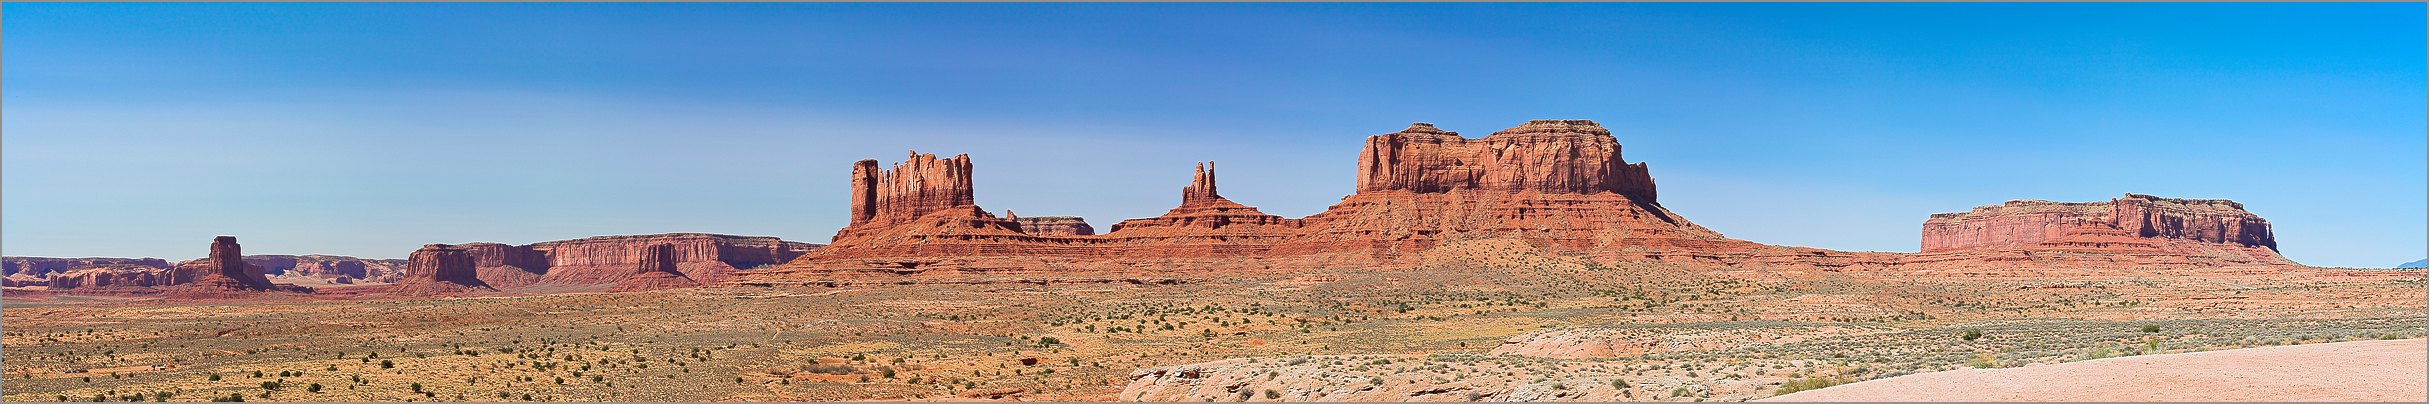 Monument Valley (Navajo Tribal Park) Eagle Mesa, Sentinel Mesa & the Big Indian Castle Butte en vue panomarique réalisée avec CANON 5D + EF 100 macro F2,8